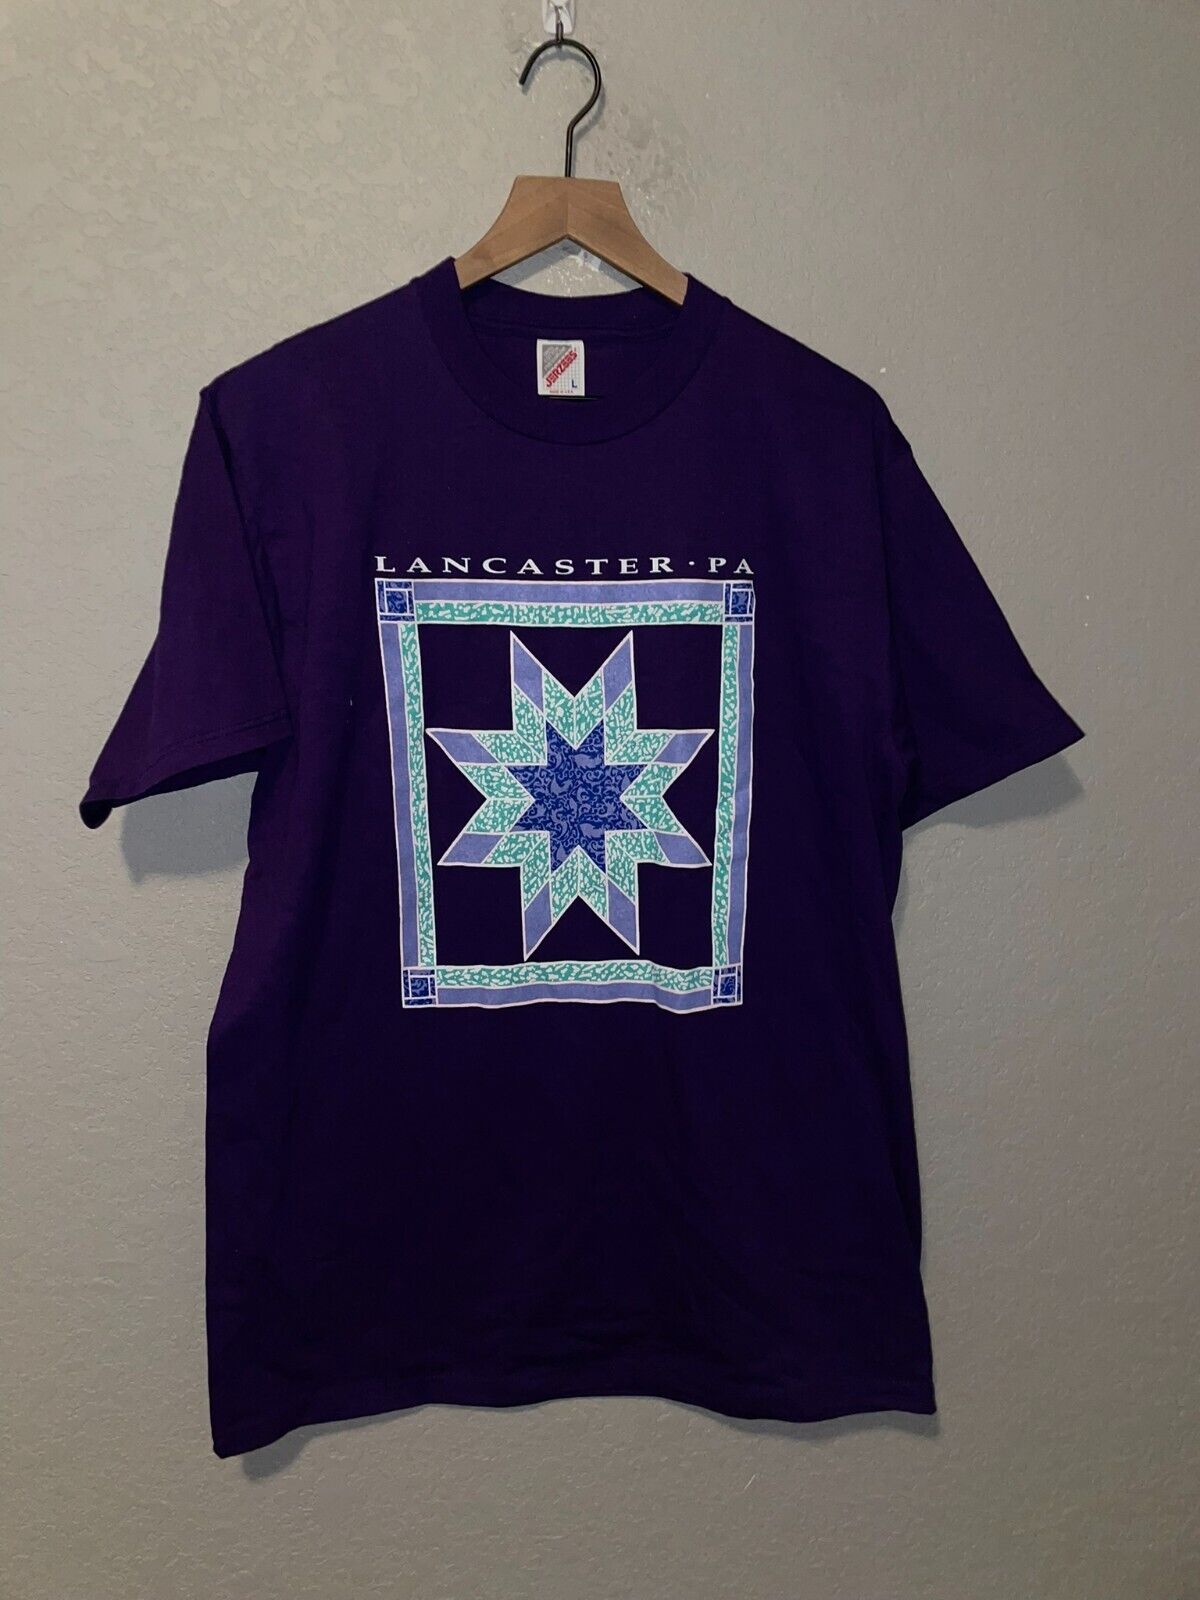 90s Vintage Jerzees Pastel Star Quilt Lancaster PA Graphic Purple Shirt VTG 1990